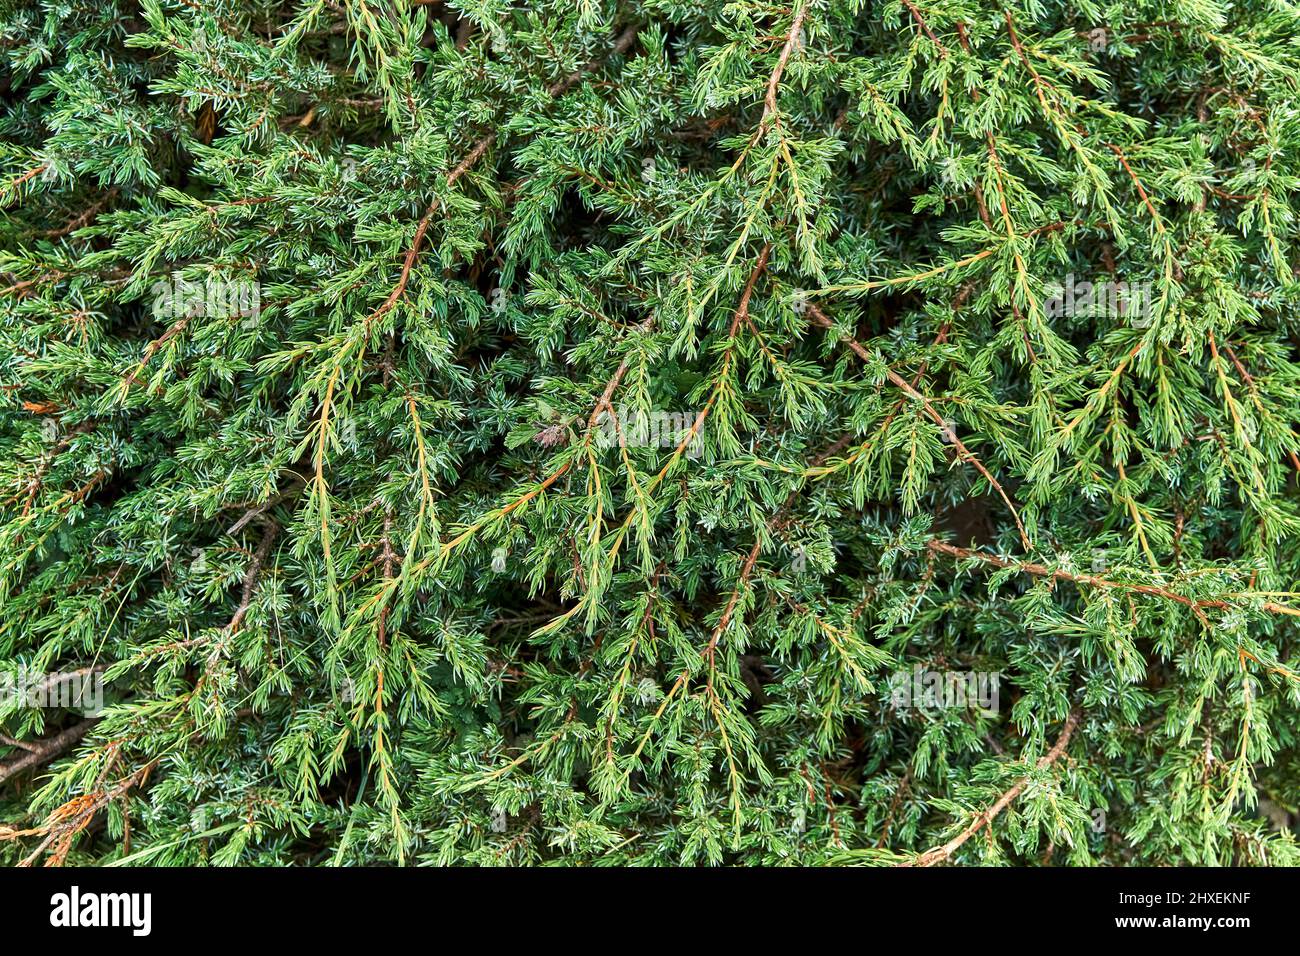 Aromatischer grüner Wacholderbusch verzweigt sich als Hintergrund Nahaufnahme. Immergrüne Pflanze für natürliche Gartengestaltung. Erstaunliche Fichtenpflanze in wildem Naturwald Stockfoto